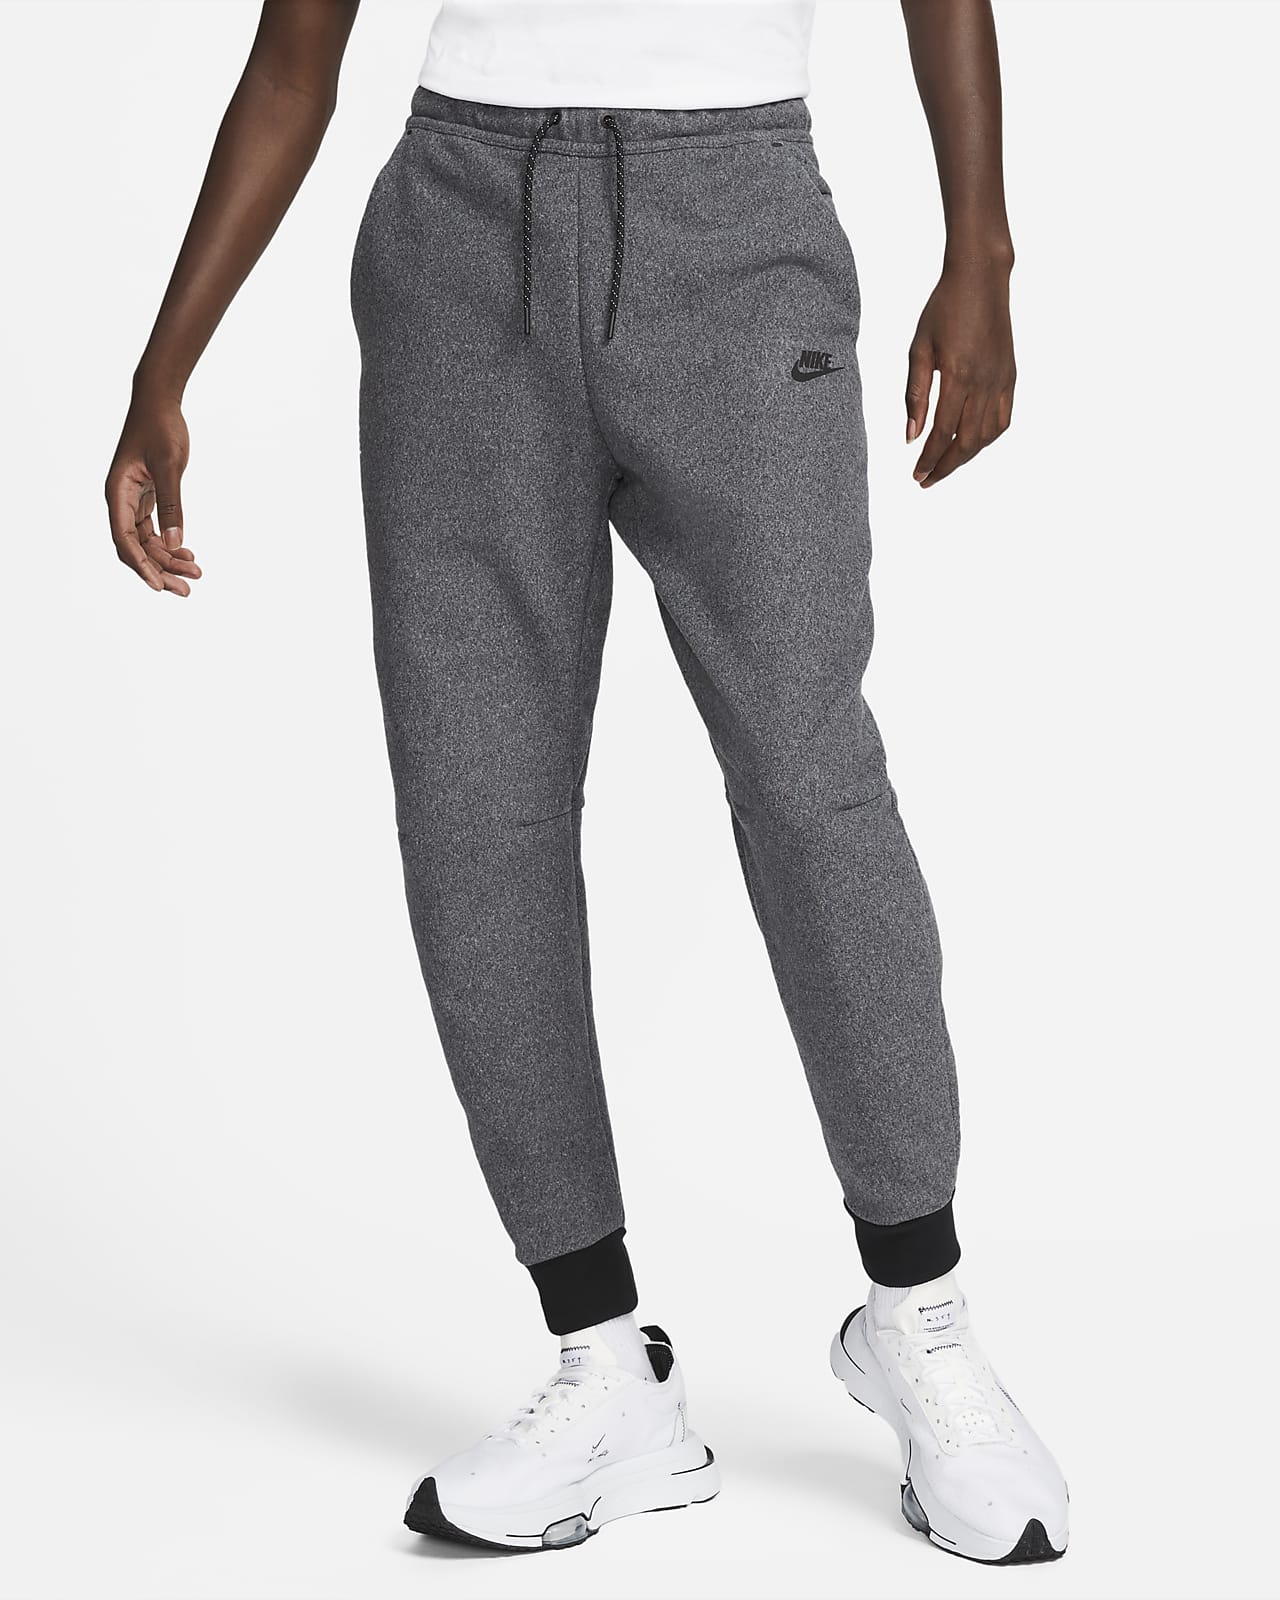 Uitgang duurzame grondstof Verzorger Nike Sportswear Tech Fleece Winterse joggingbroek voor heren. Nike BE